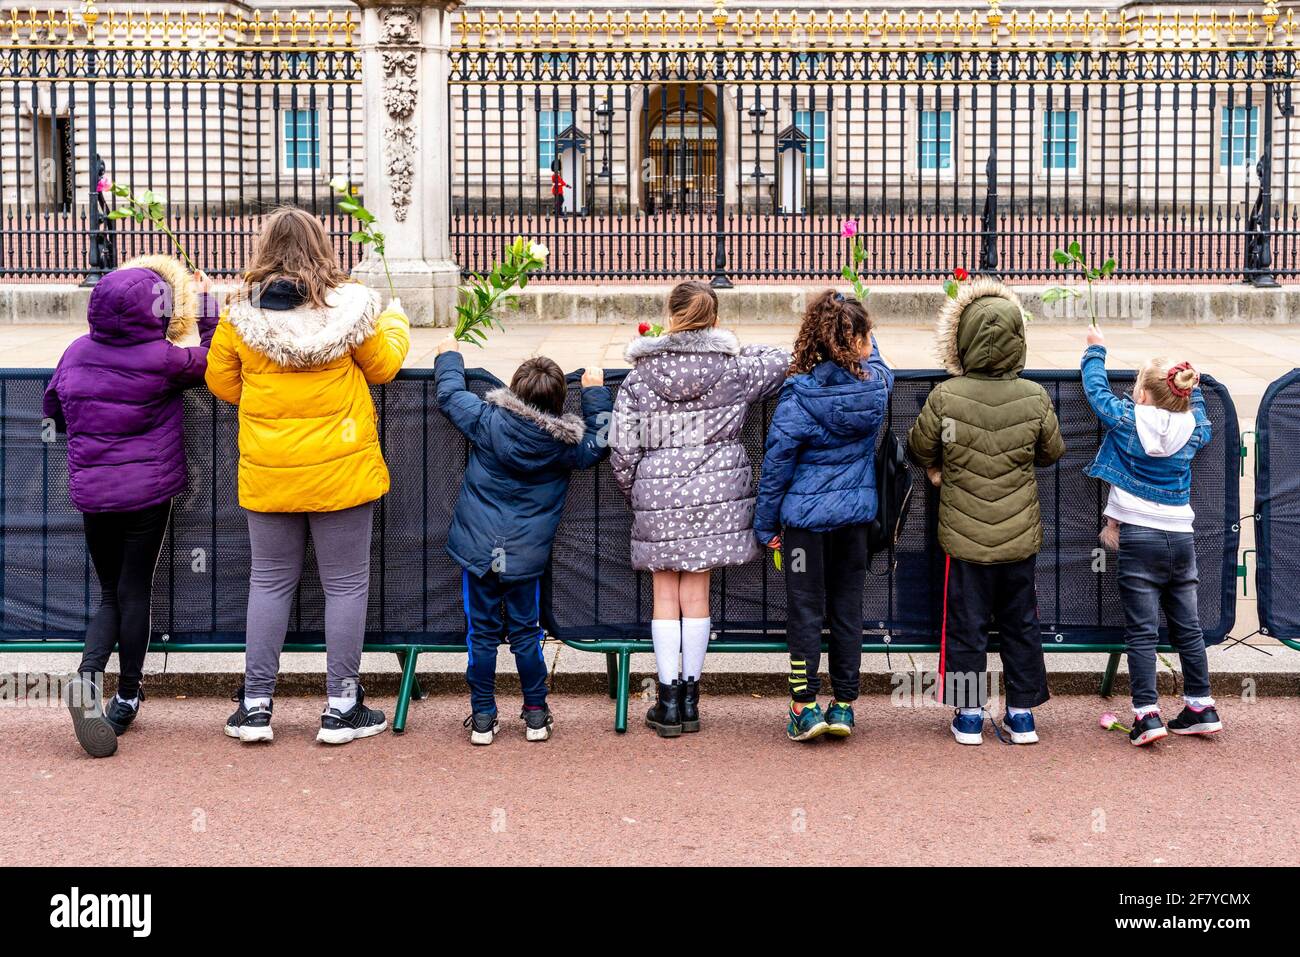 Buckingham Palace, Londres, Royaume-Uni. 10 avril 2021. Des enfants font la queue devant le palais de Buckingham pour déposer des fleurs aux portes à la mémoire du duc d'Édimbourg (prince Philip) décédé le 9 avril. Crédit : Grant Rooney/Alay Live News Banque D'Images